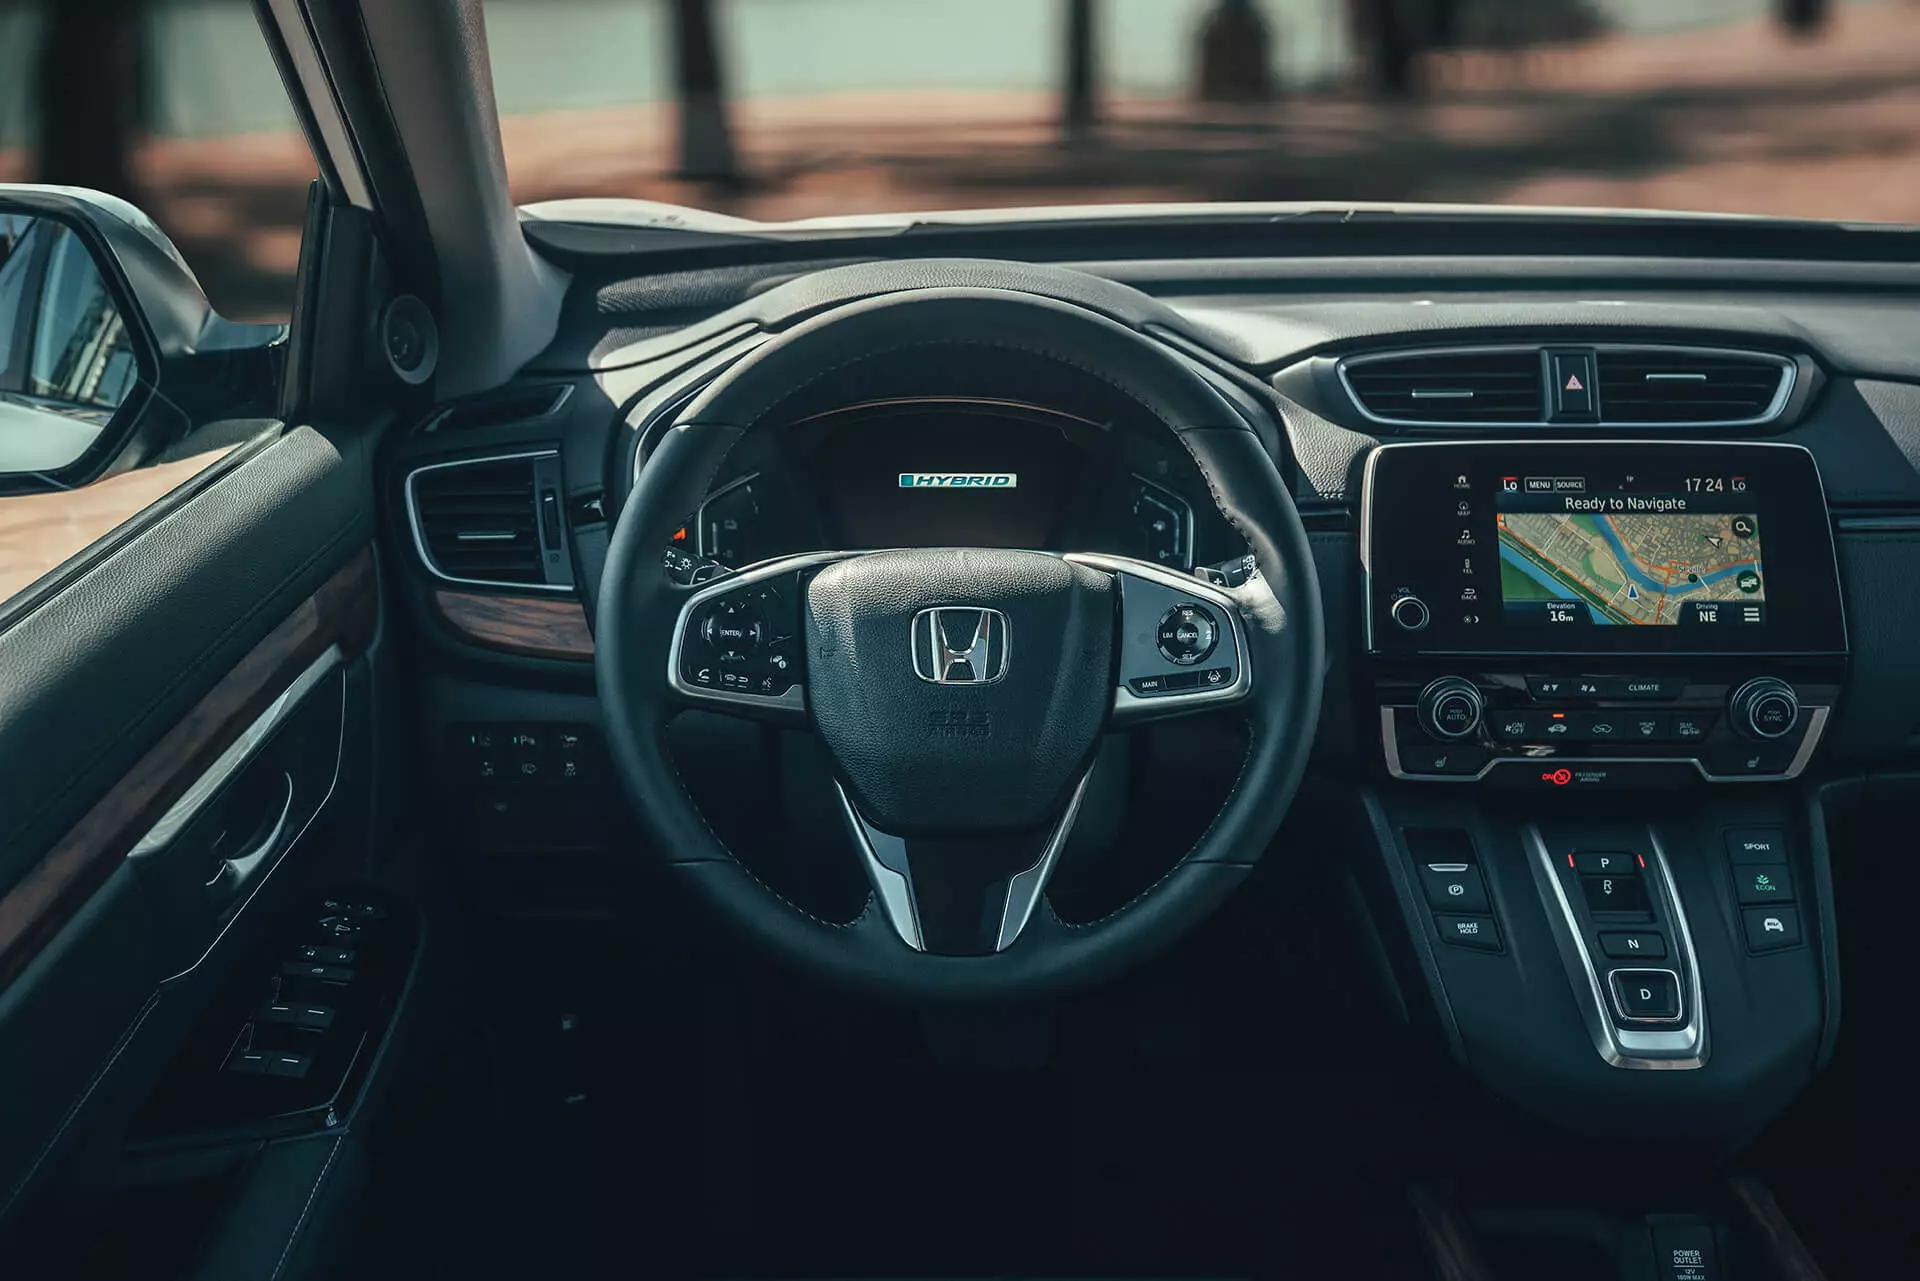 Honda CR-V ድብልቅ